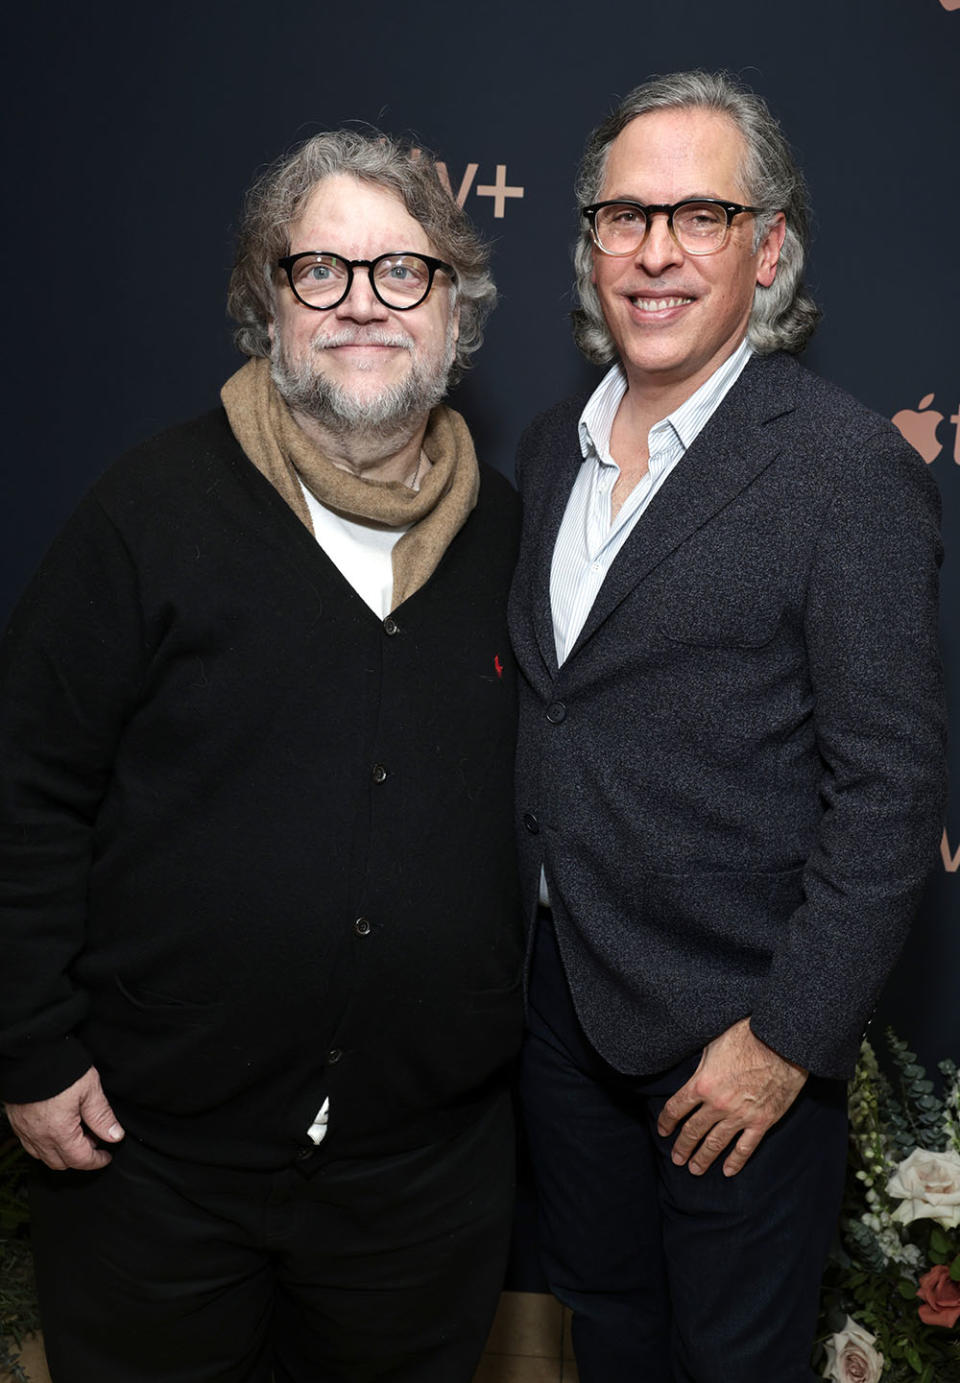 Guillermo del Toro and Rodrigo Prieto